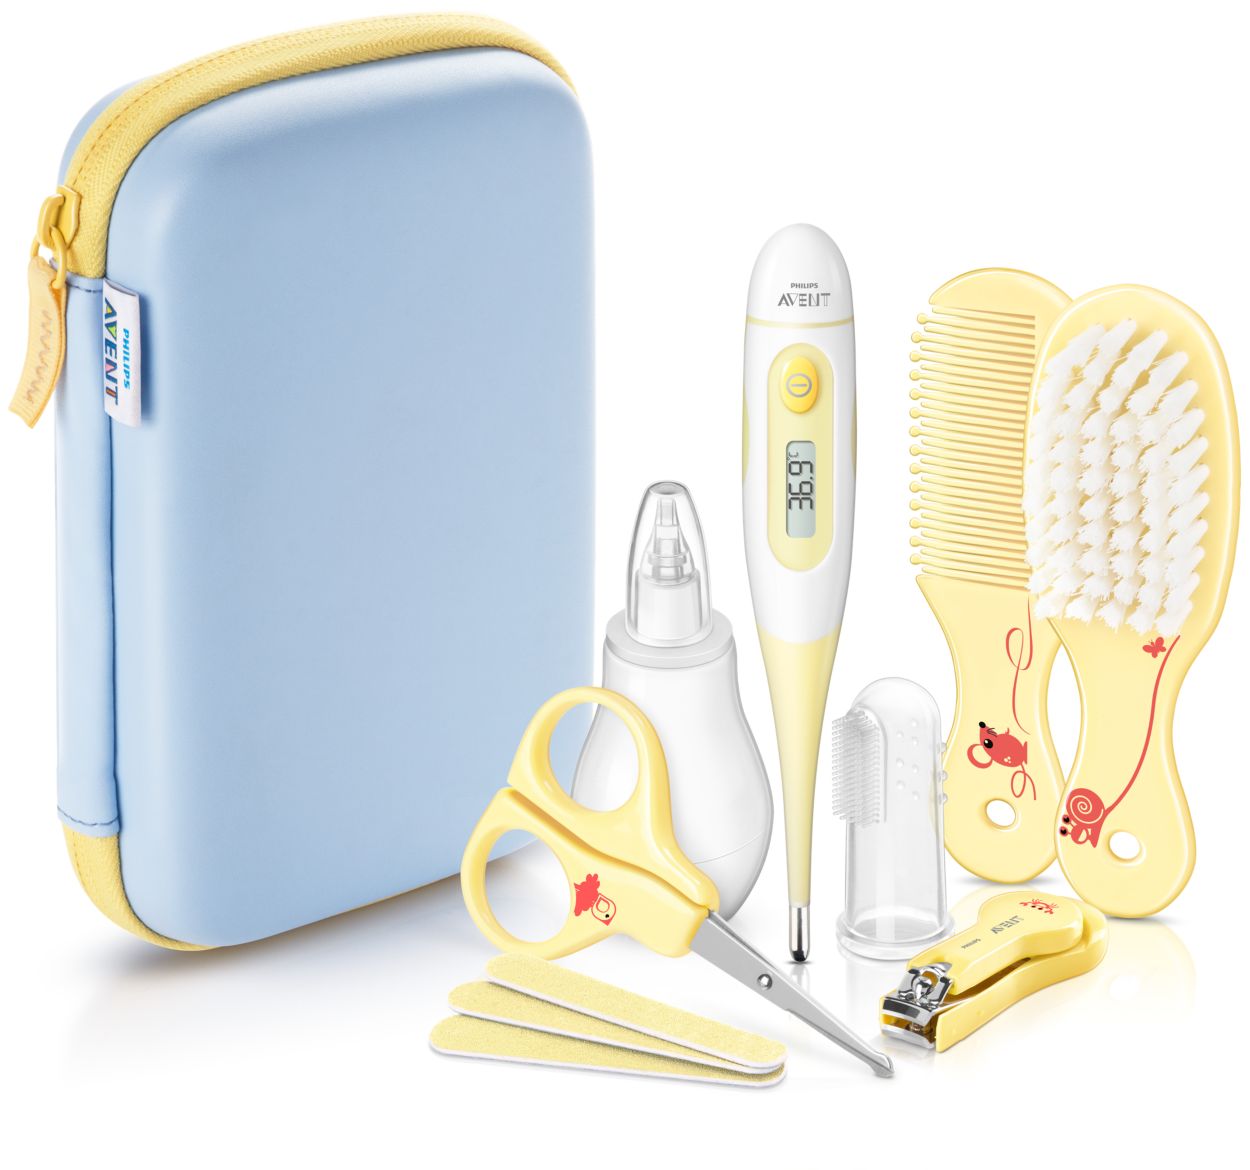 Kit de aseo para bebés, juego portátil de cuidado de seguridad para bebés  con cepillo para el cabello, peine cortaúñas, aspirador nasal, etc. para